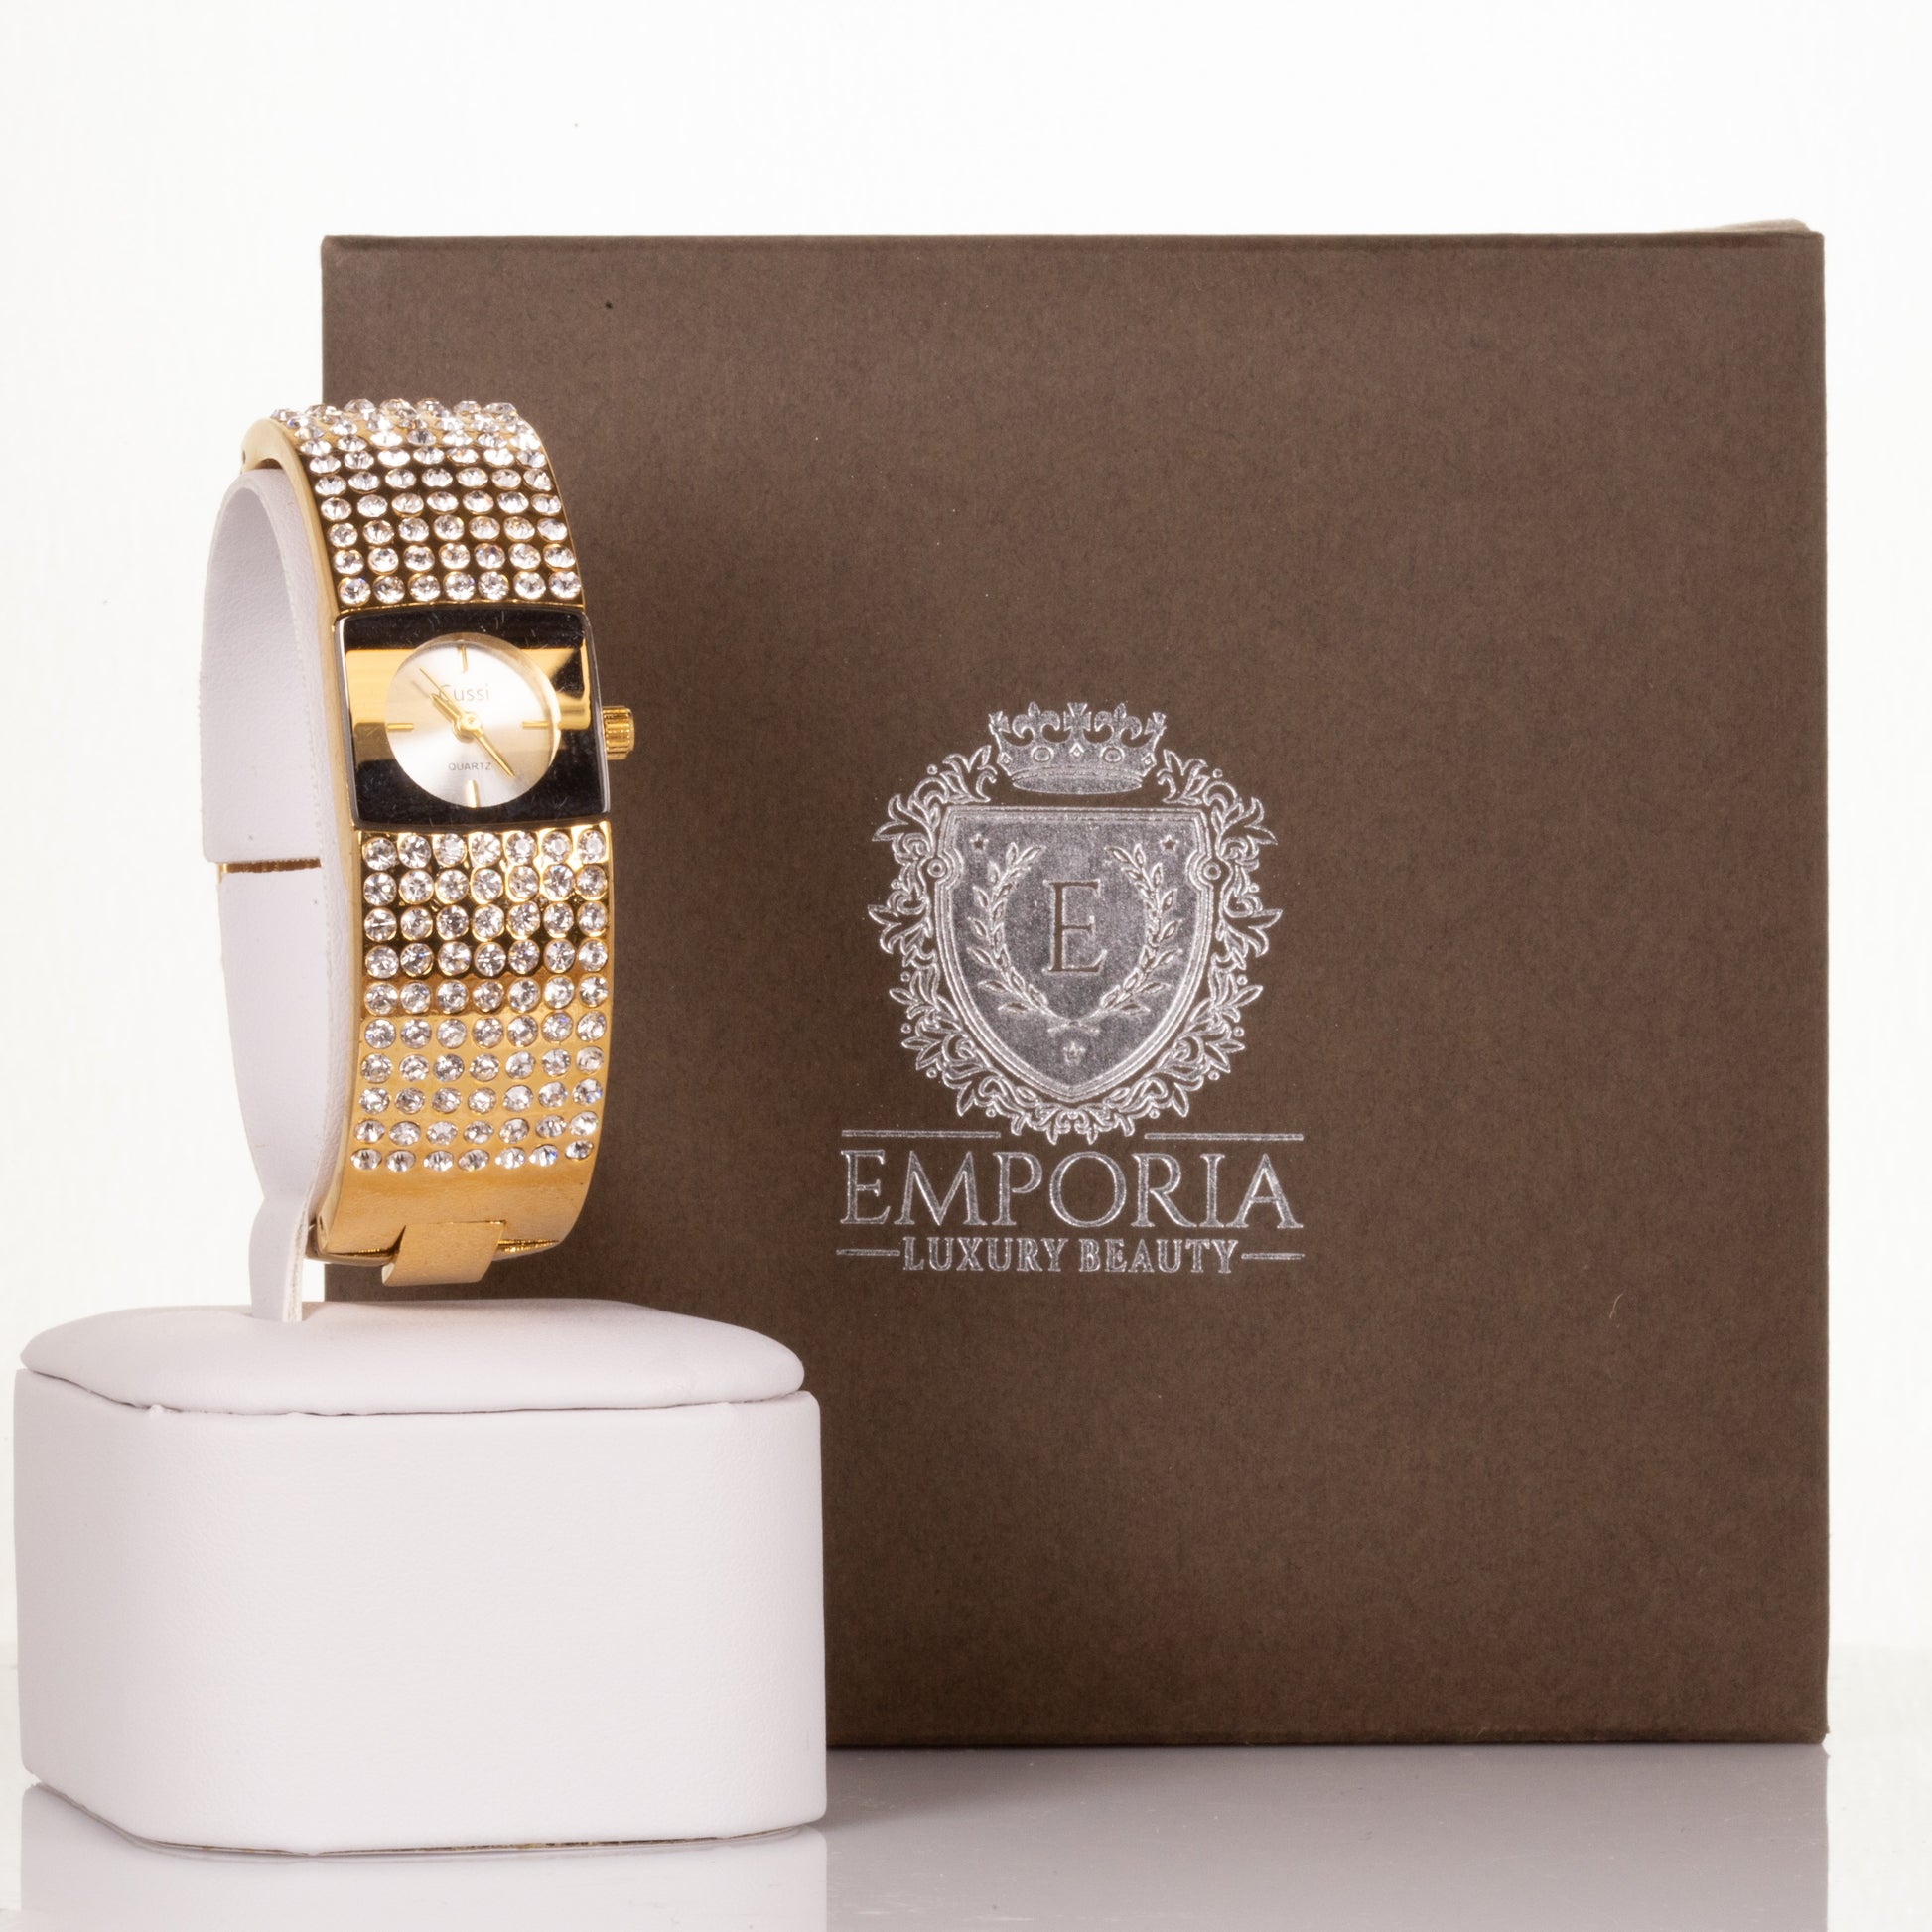 CUSSI dámské hodinky ve zlaté barvě se 7 řadami krystalů křemene | -80% Akce na Šperky